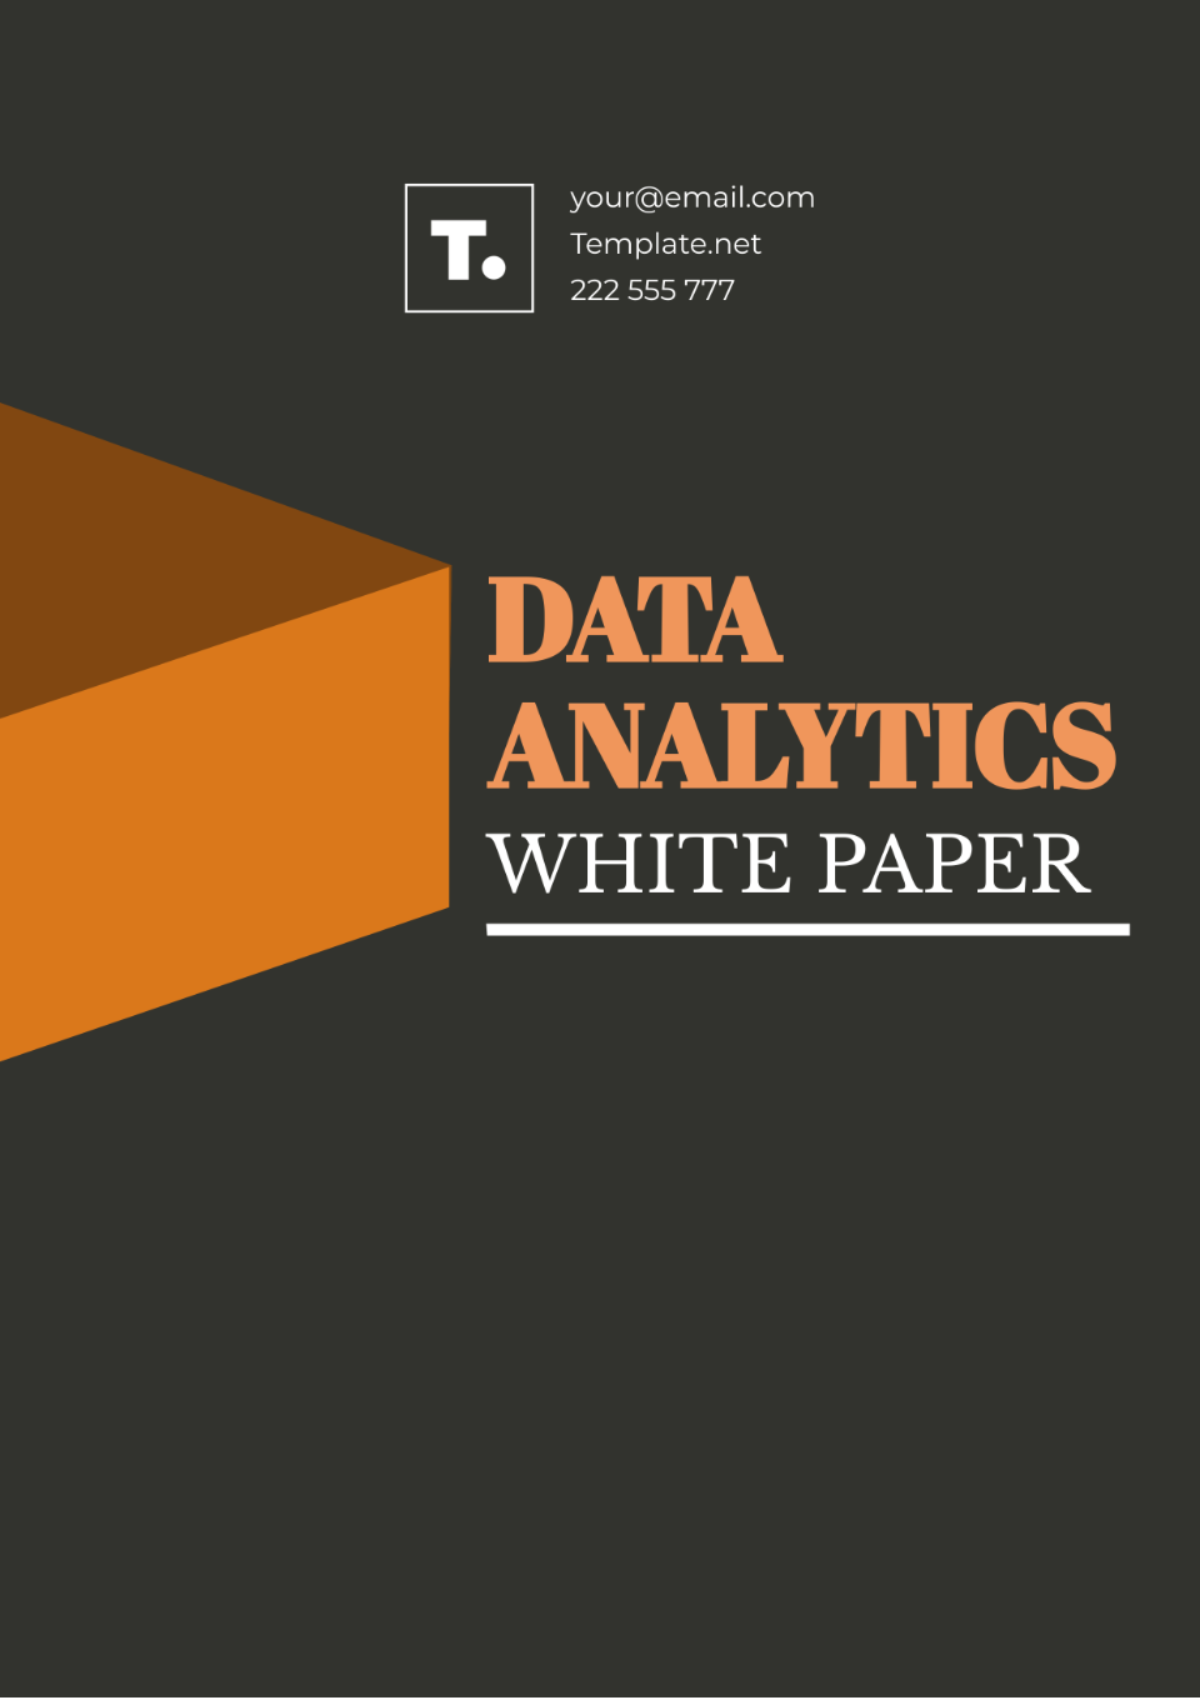 Data Analytics White Paper Template